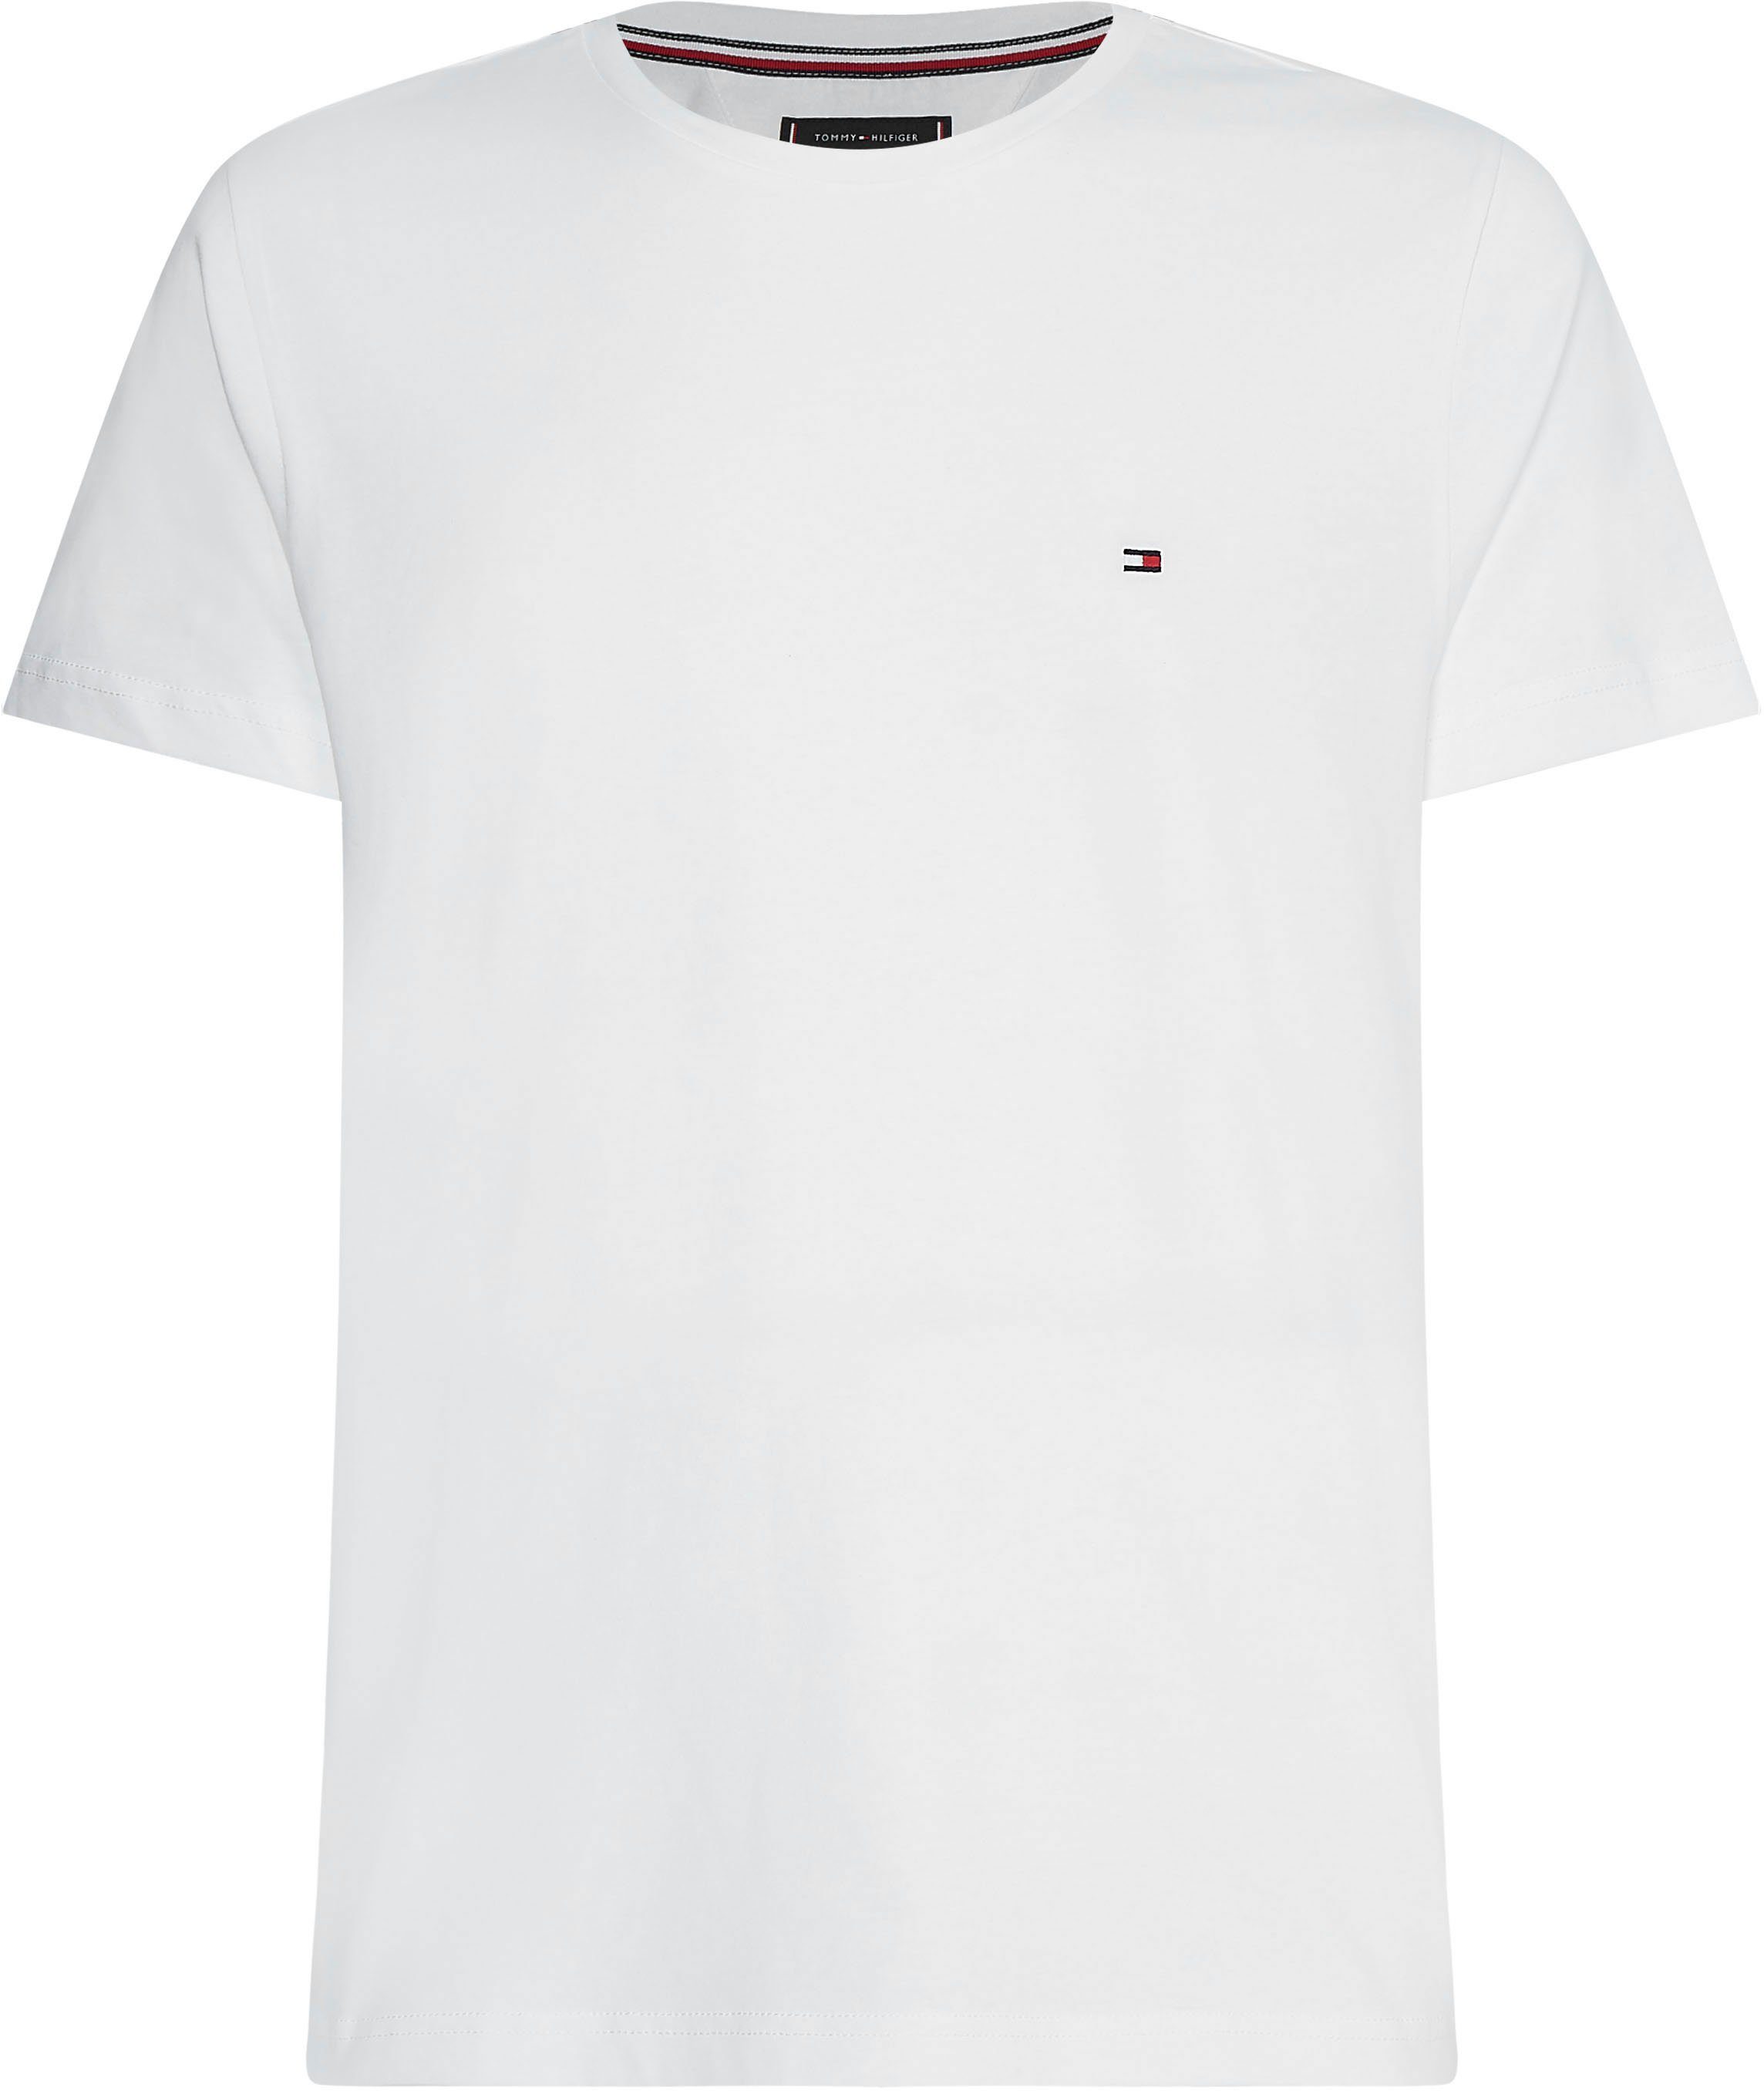 Tommy Hilfiger Herren Shirts online kaufen | OTTO